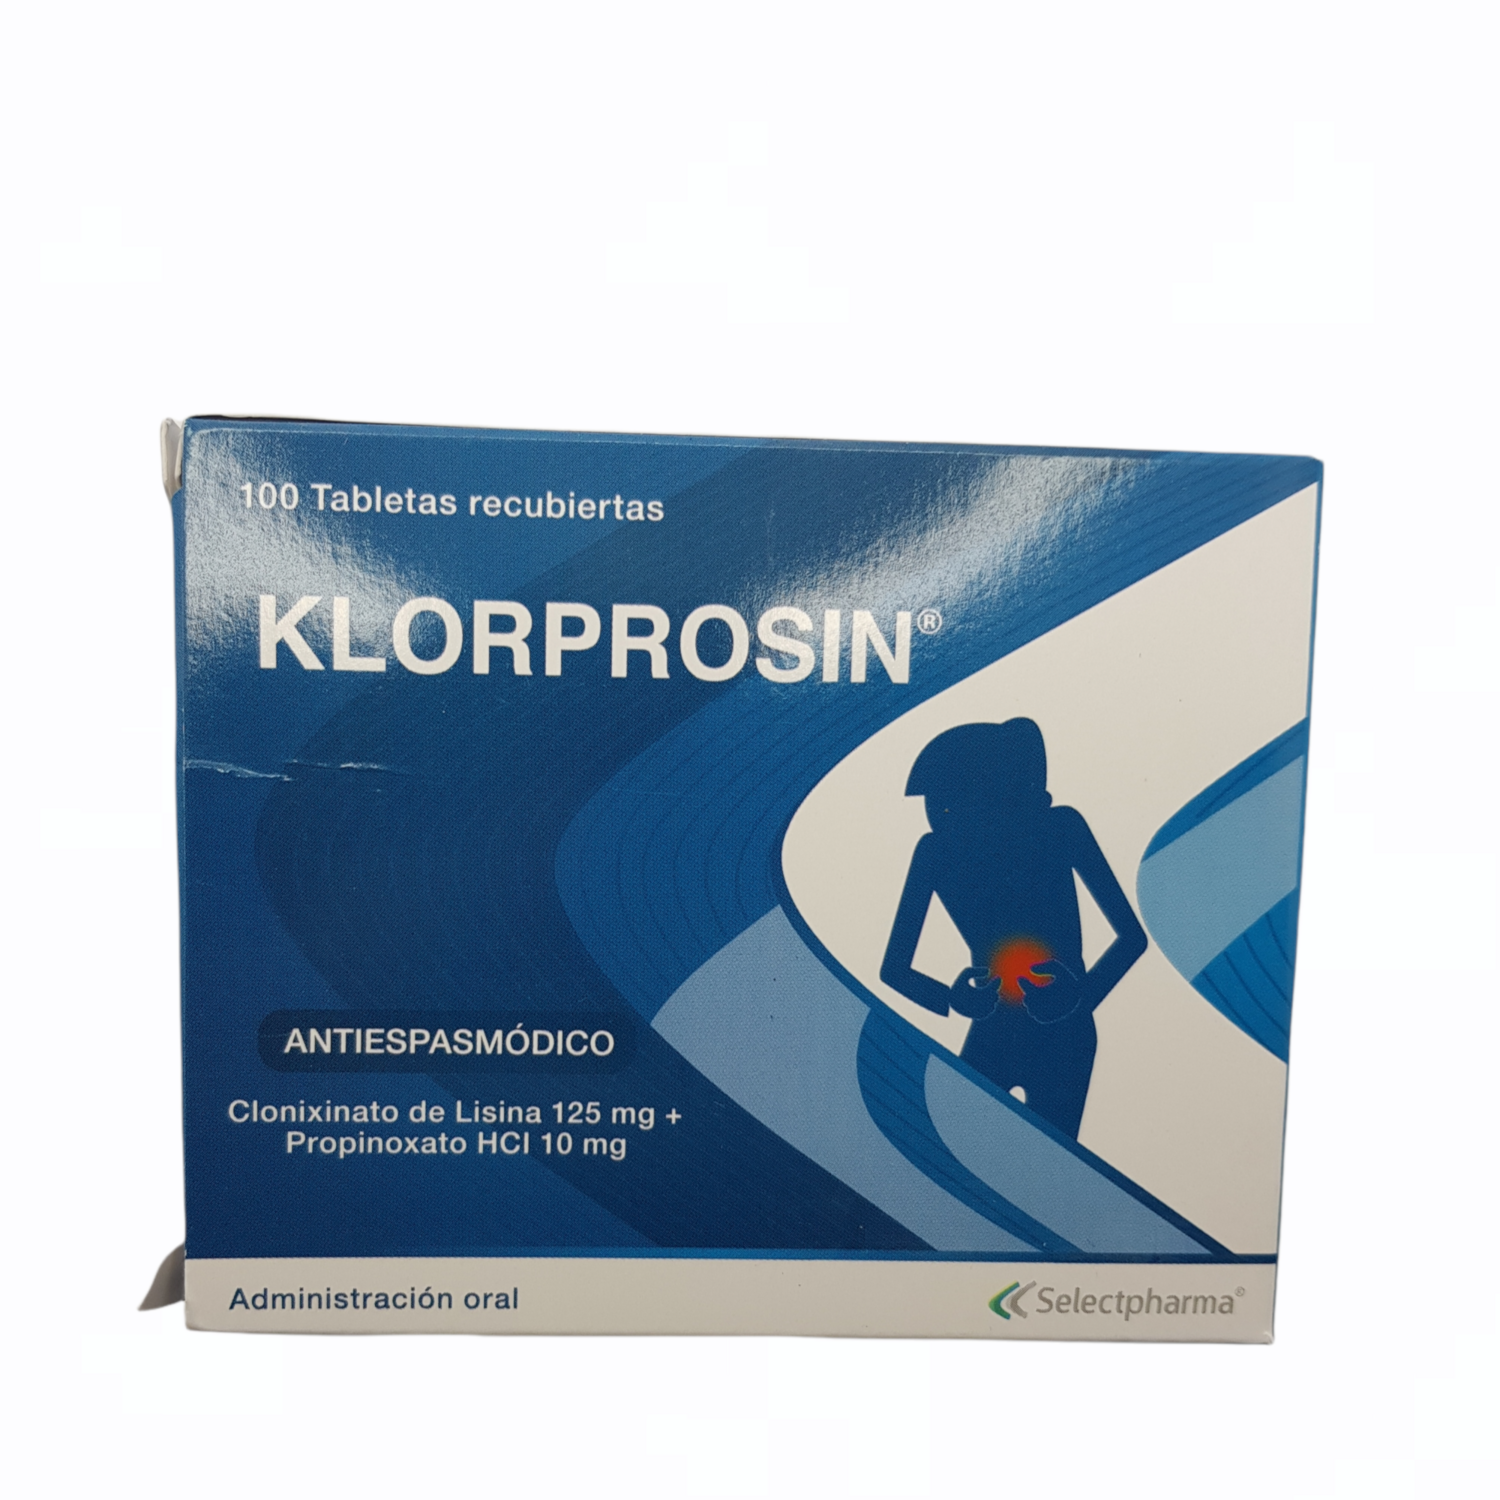 KLORPROSIN (Clonixinato+Propinoxato) BX 10 CX 100 TAB